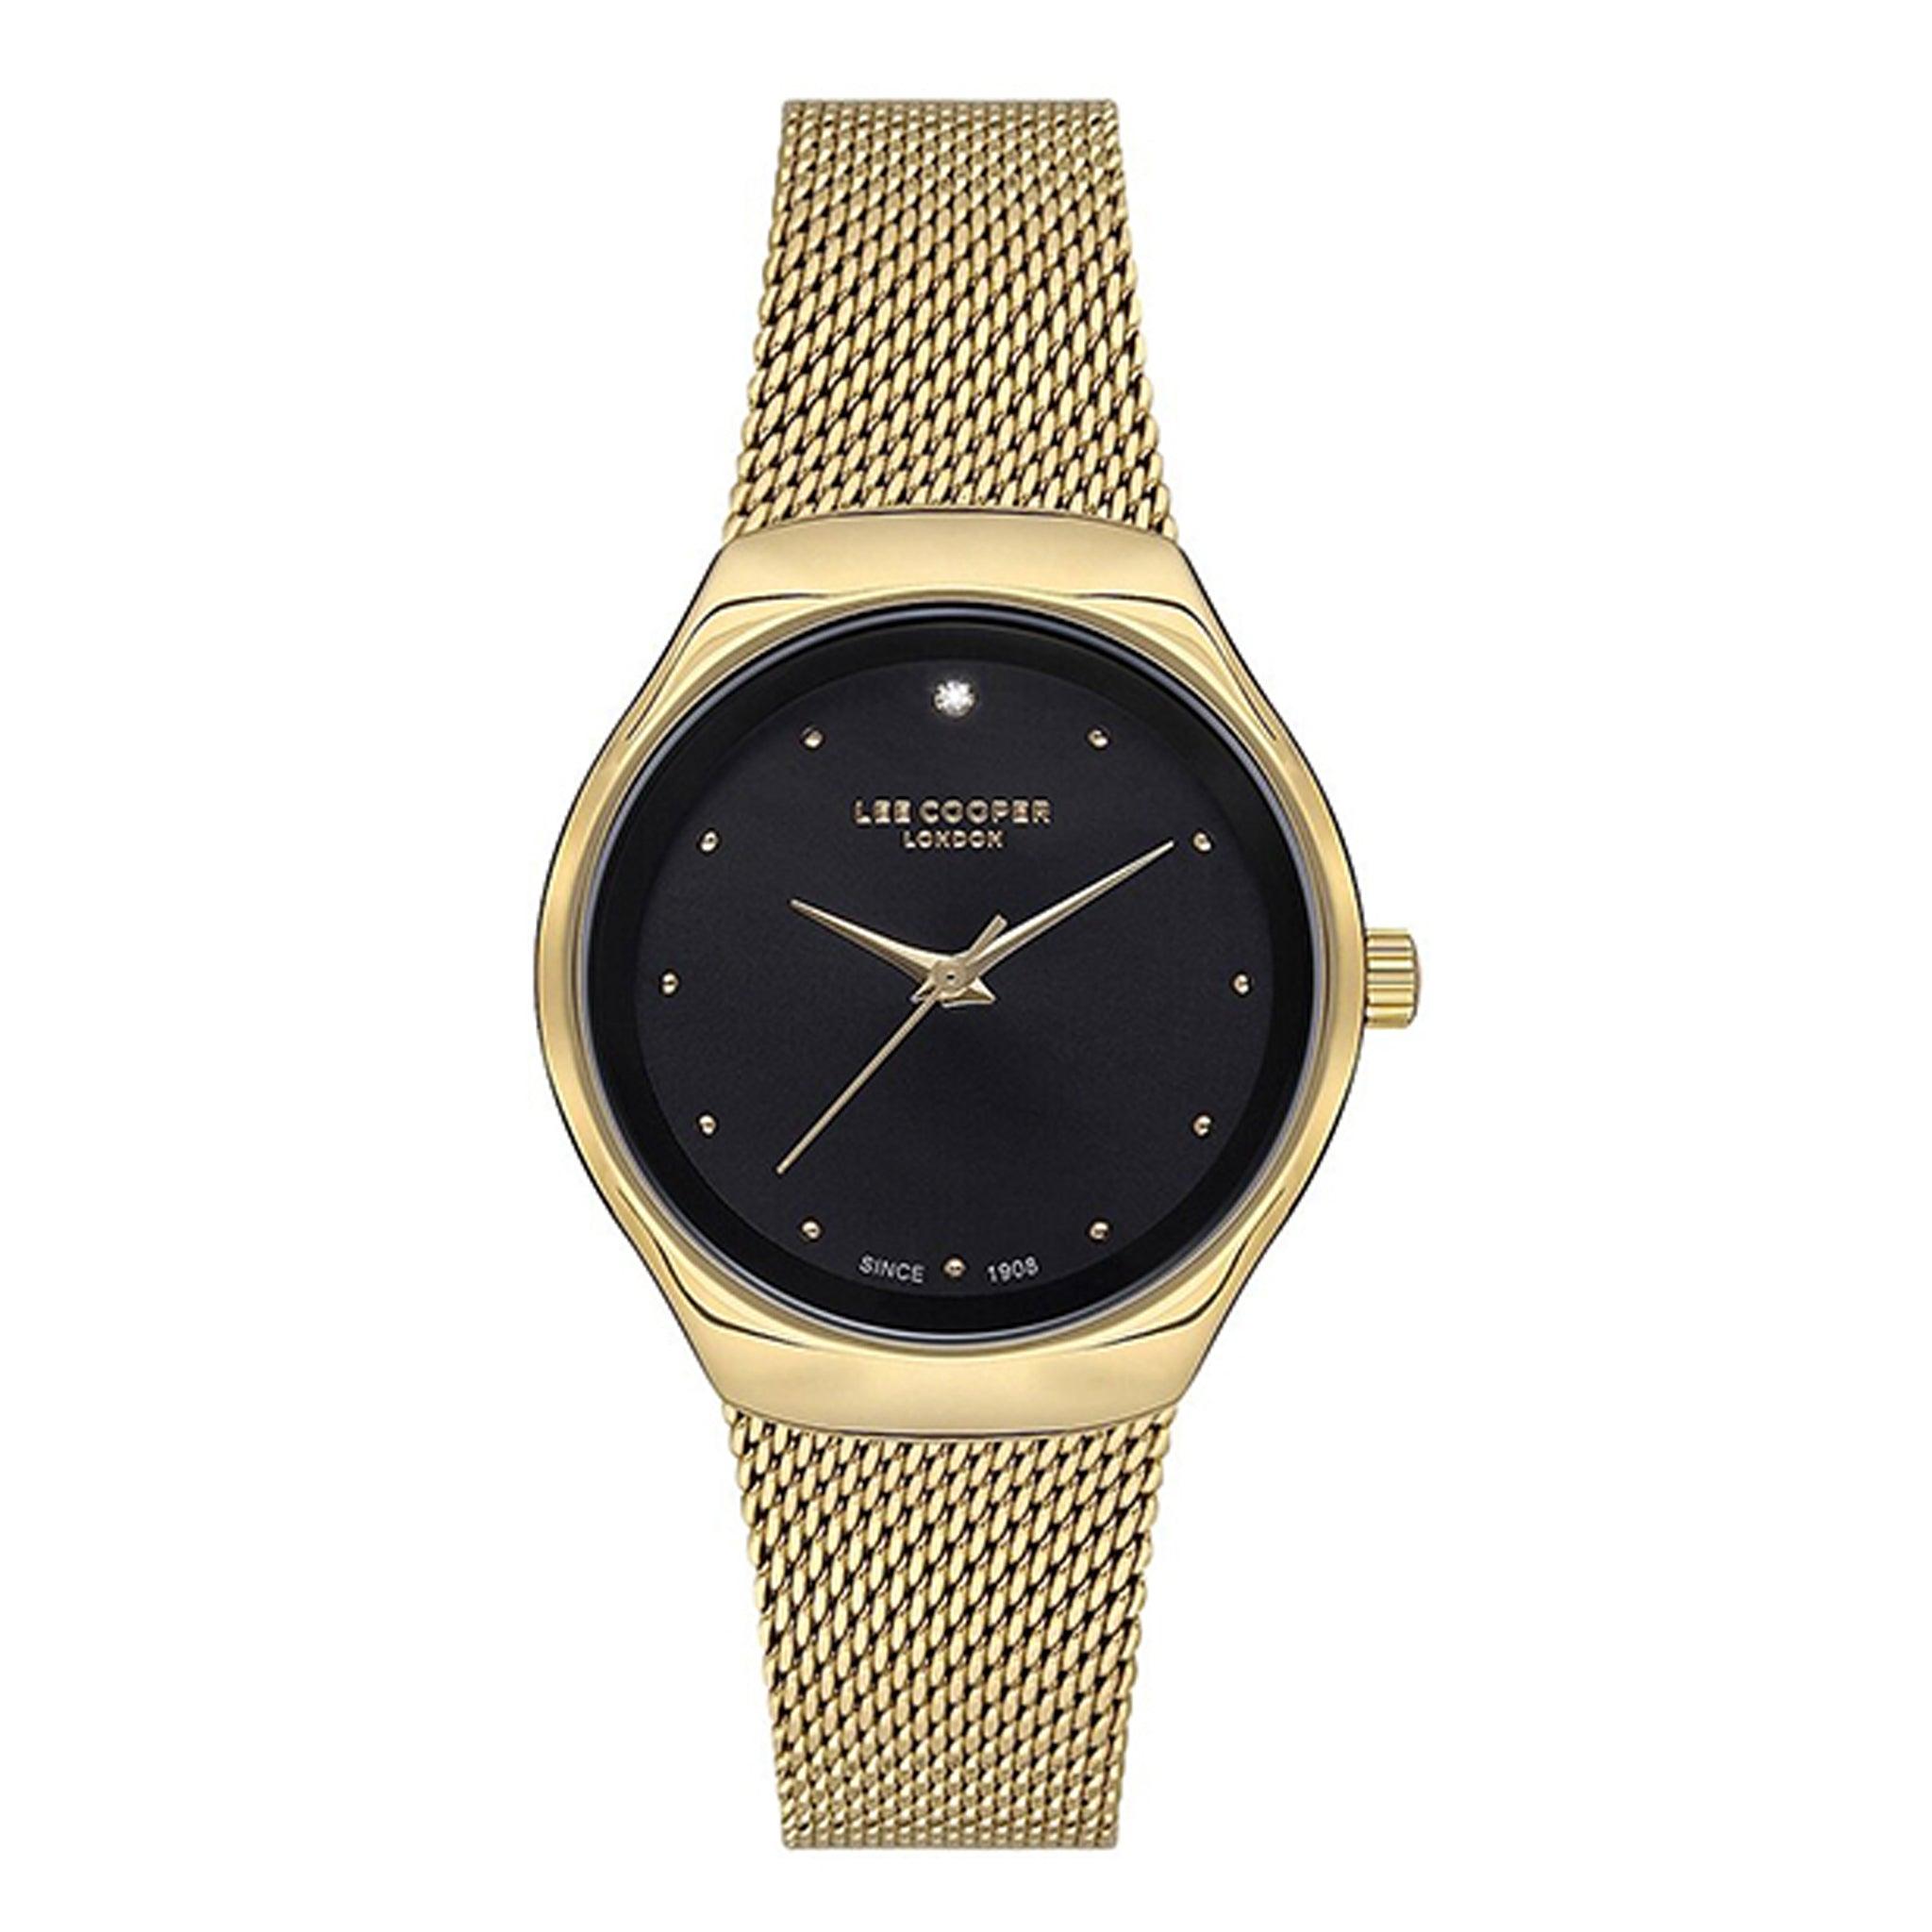 ساعة يد نسائية - ذهبي و مينا باللون الأسود - بحزام ذهبي وردي من الفولاذ المقاوم للصدأ لي كوبر Lee Cooper Women's Casual Watch , Analog